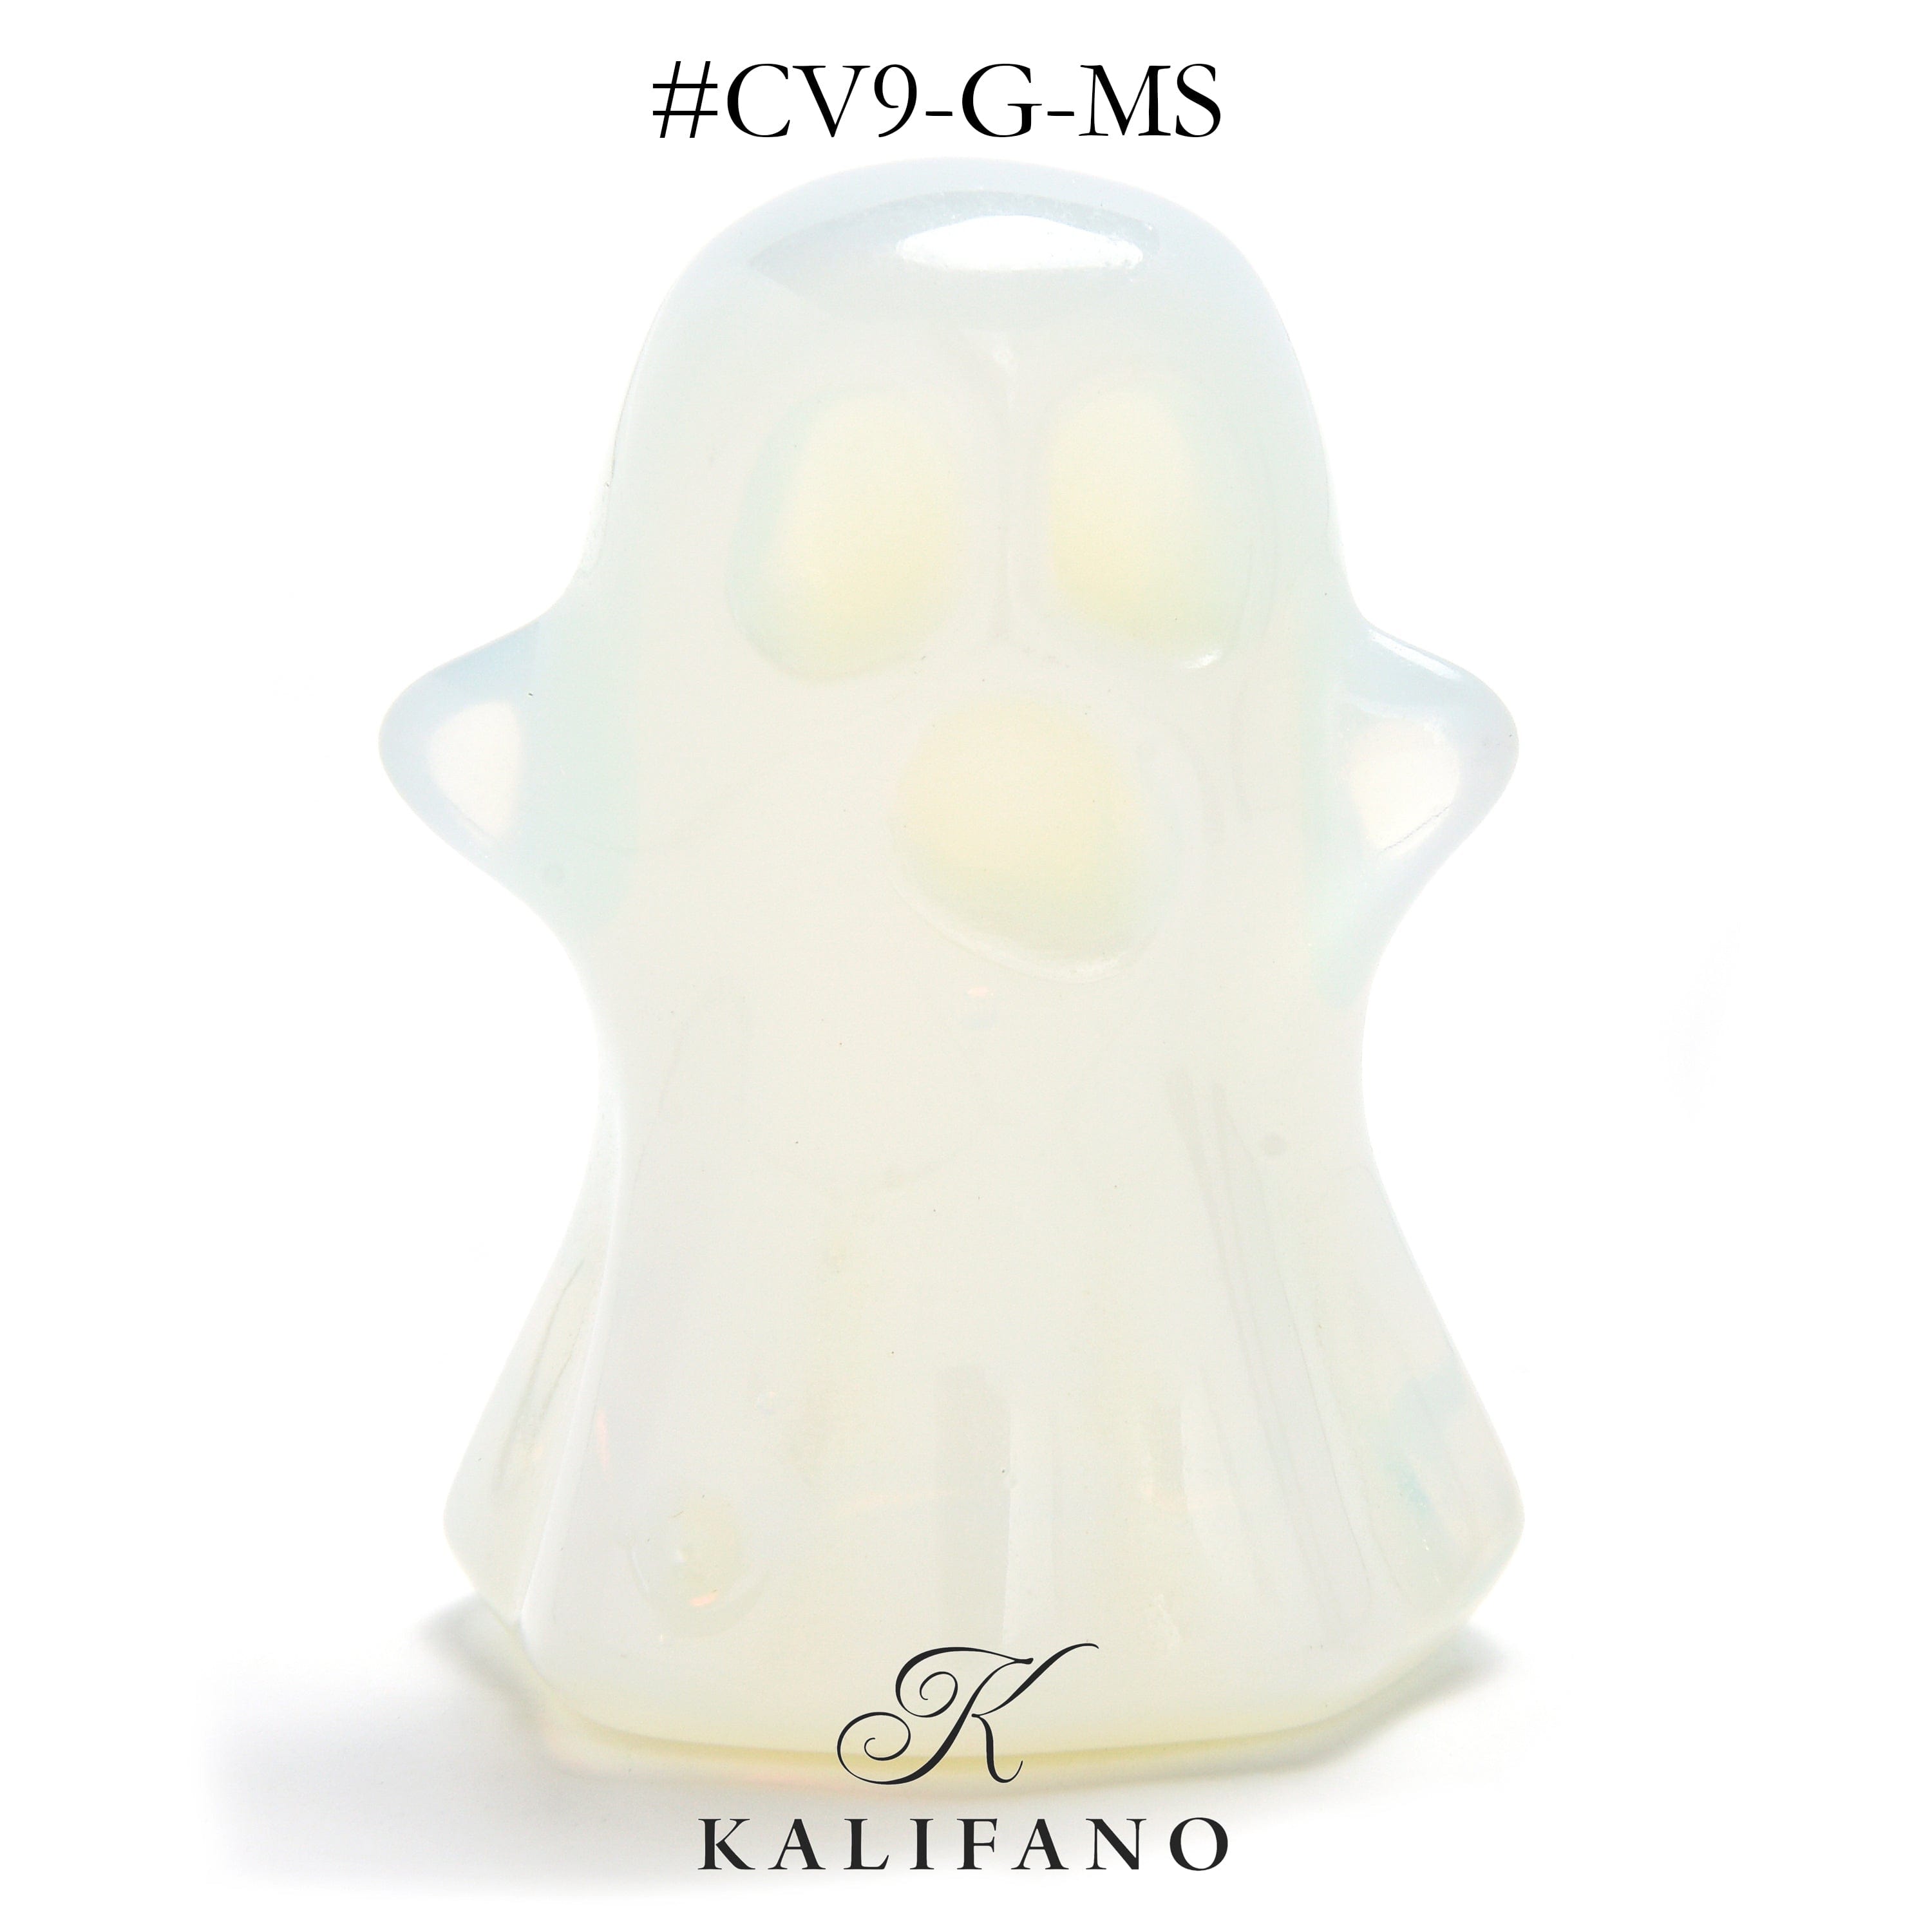 KALIFANO Gemstone Carvings 1.75" Opalite Moonstone Ghost Gemstone Carving CV9-G-MS